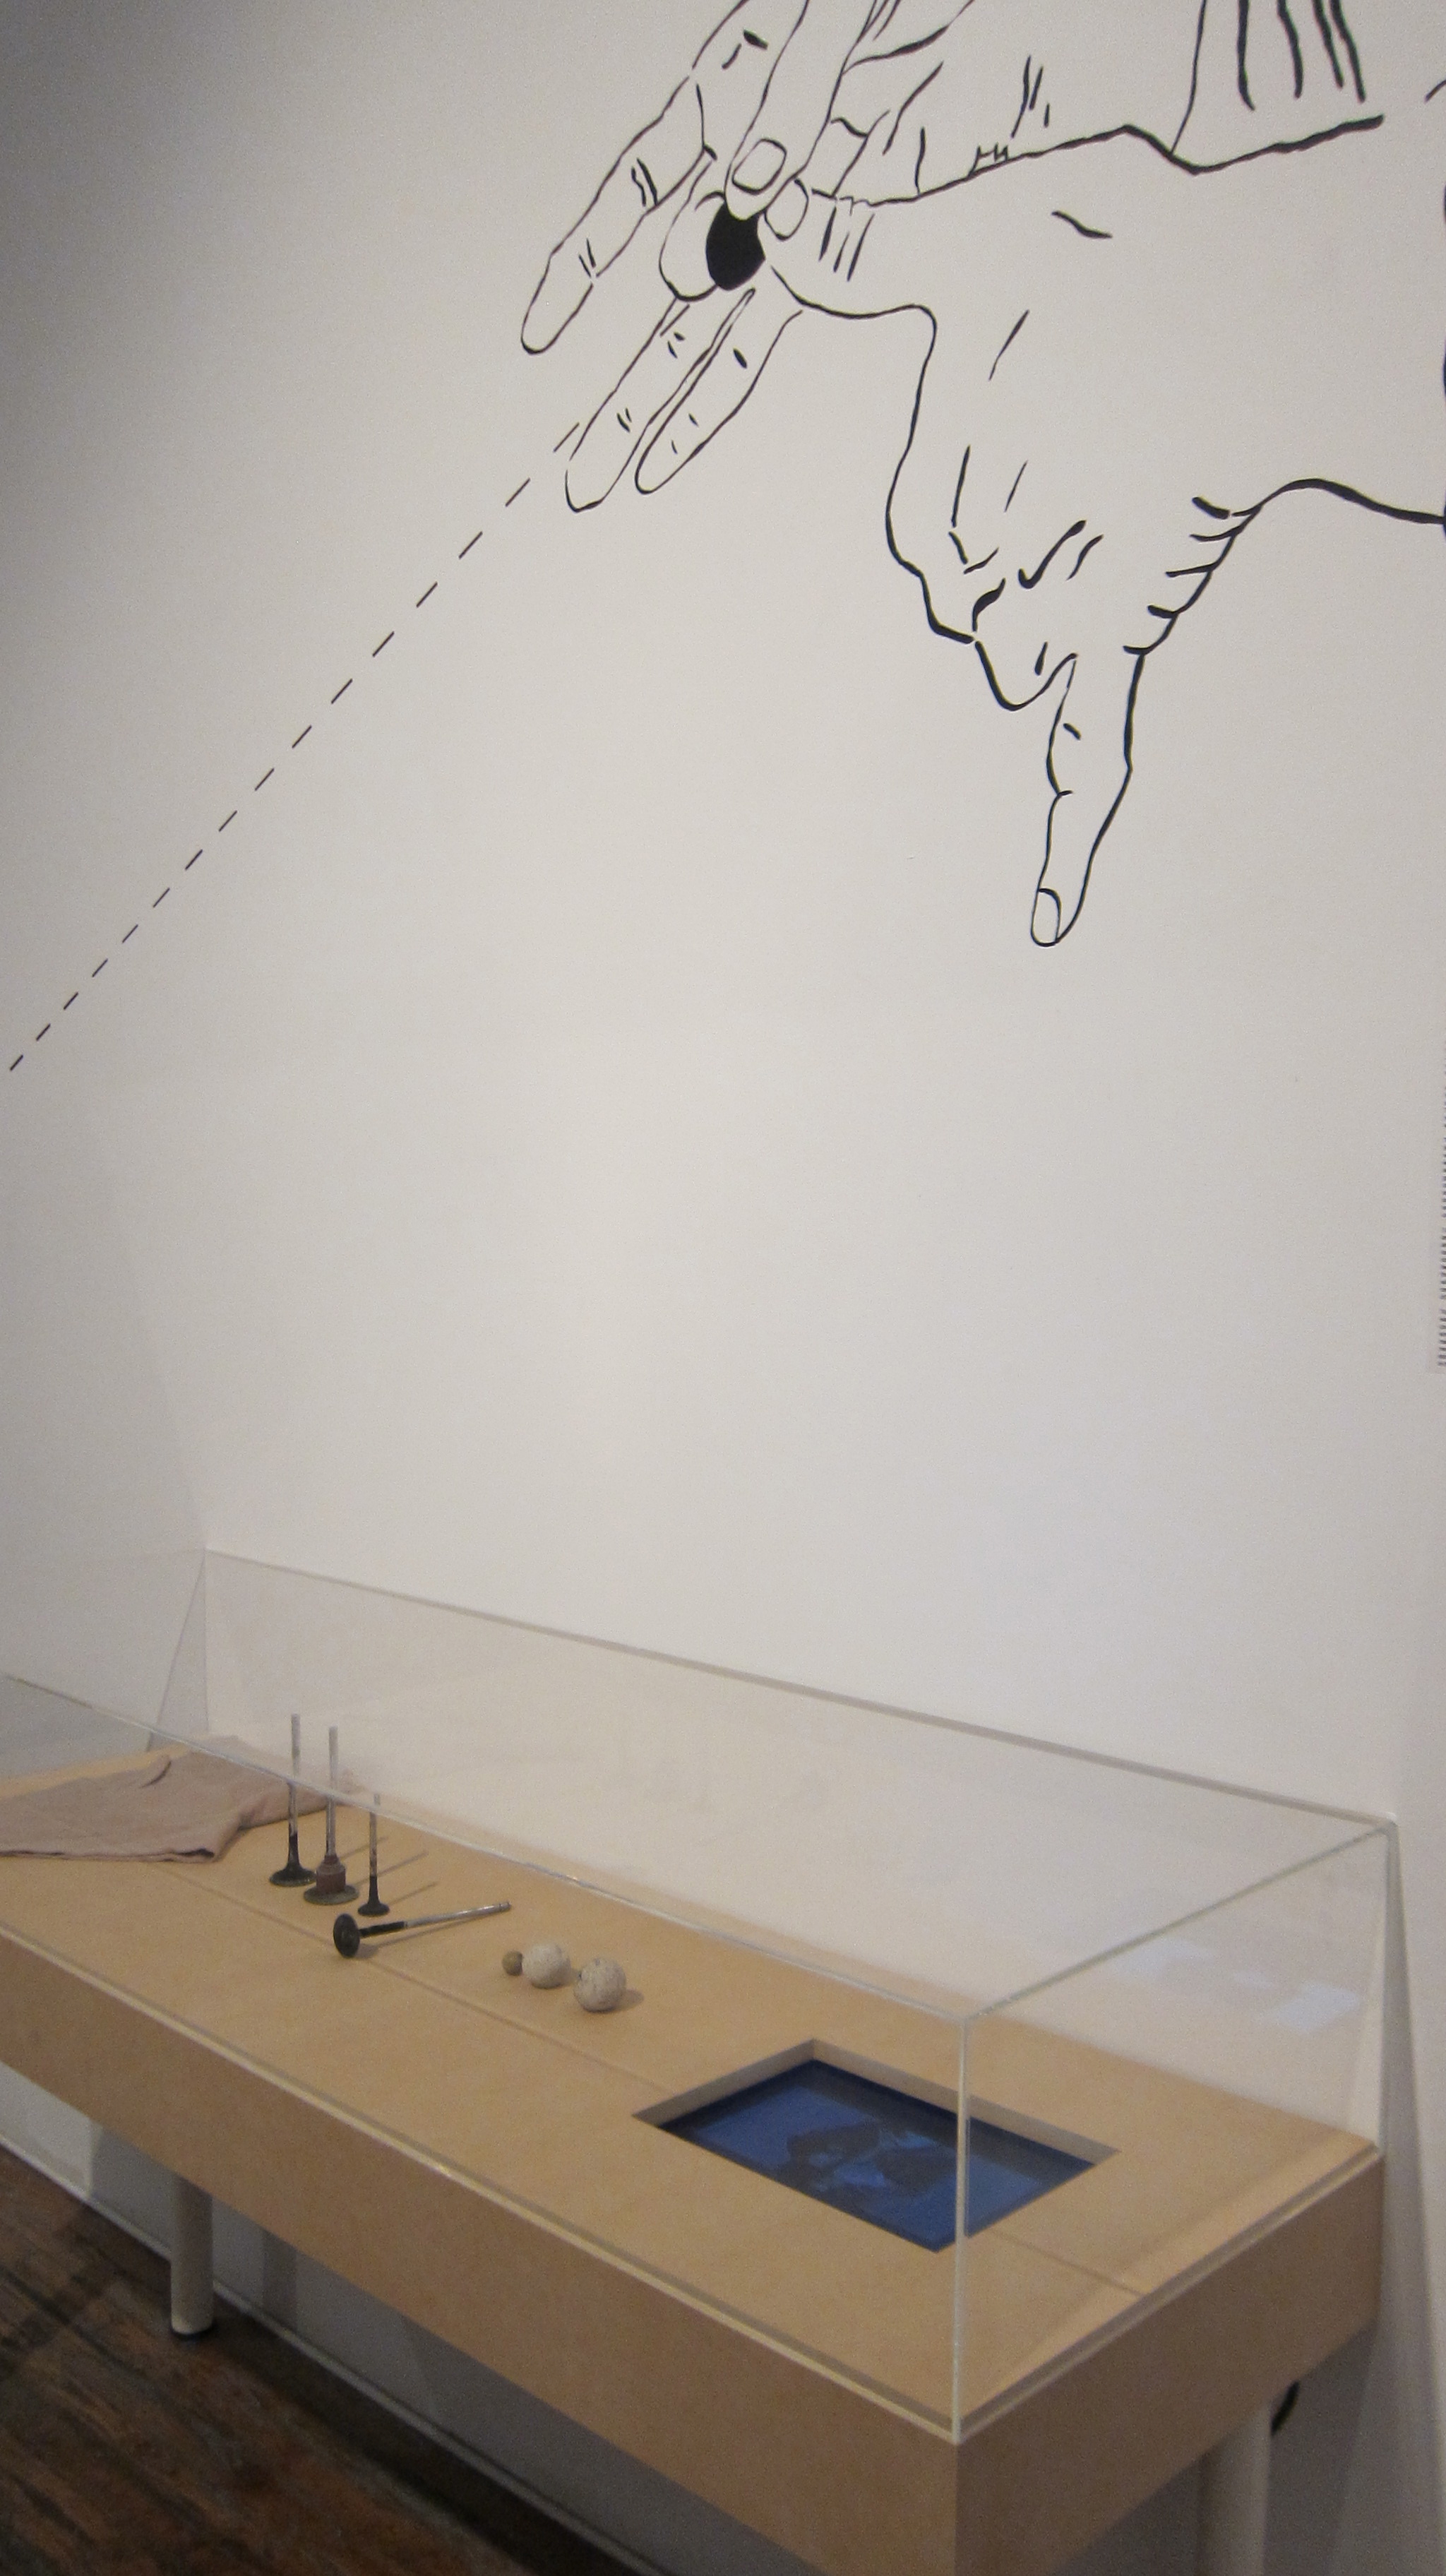 Hiwa K, "For the Few Socks of Marbles", 2012, wideo, rysunki na ścianie, obiekty w witrynie 